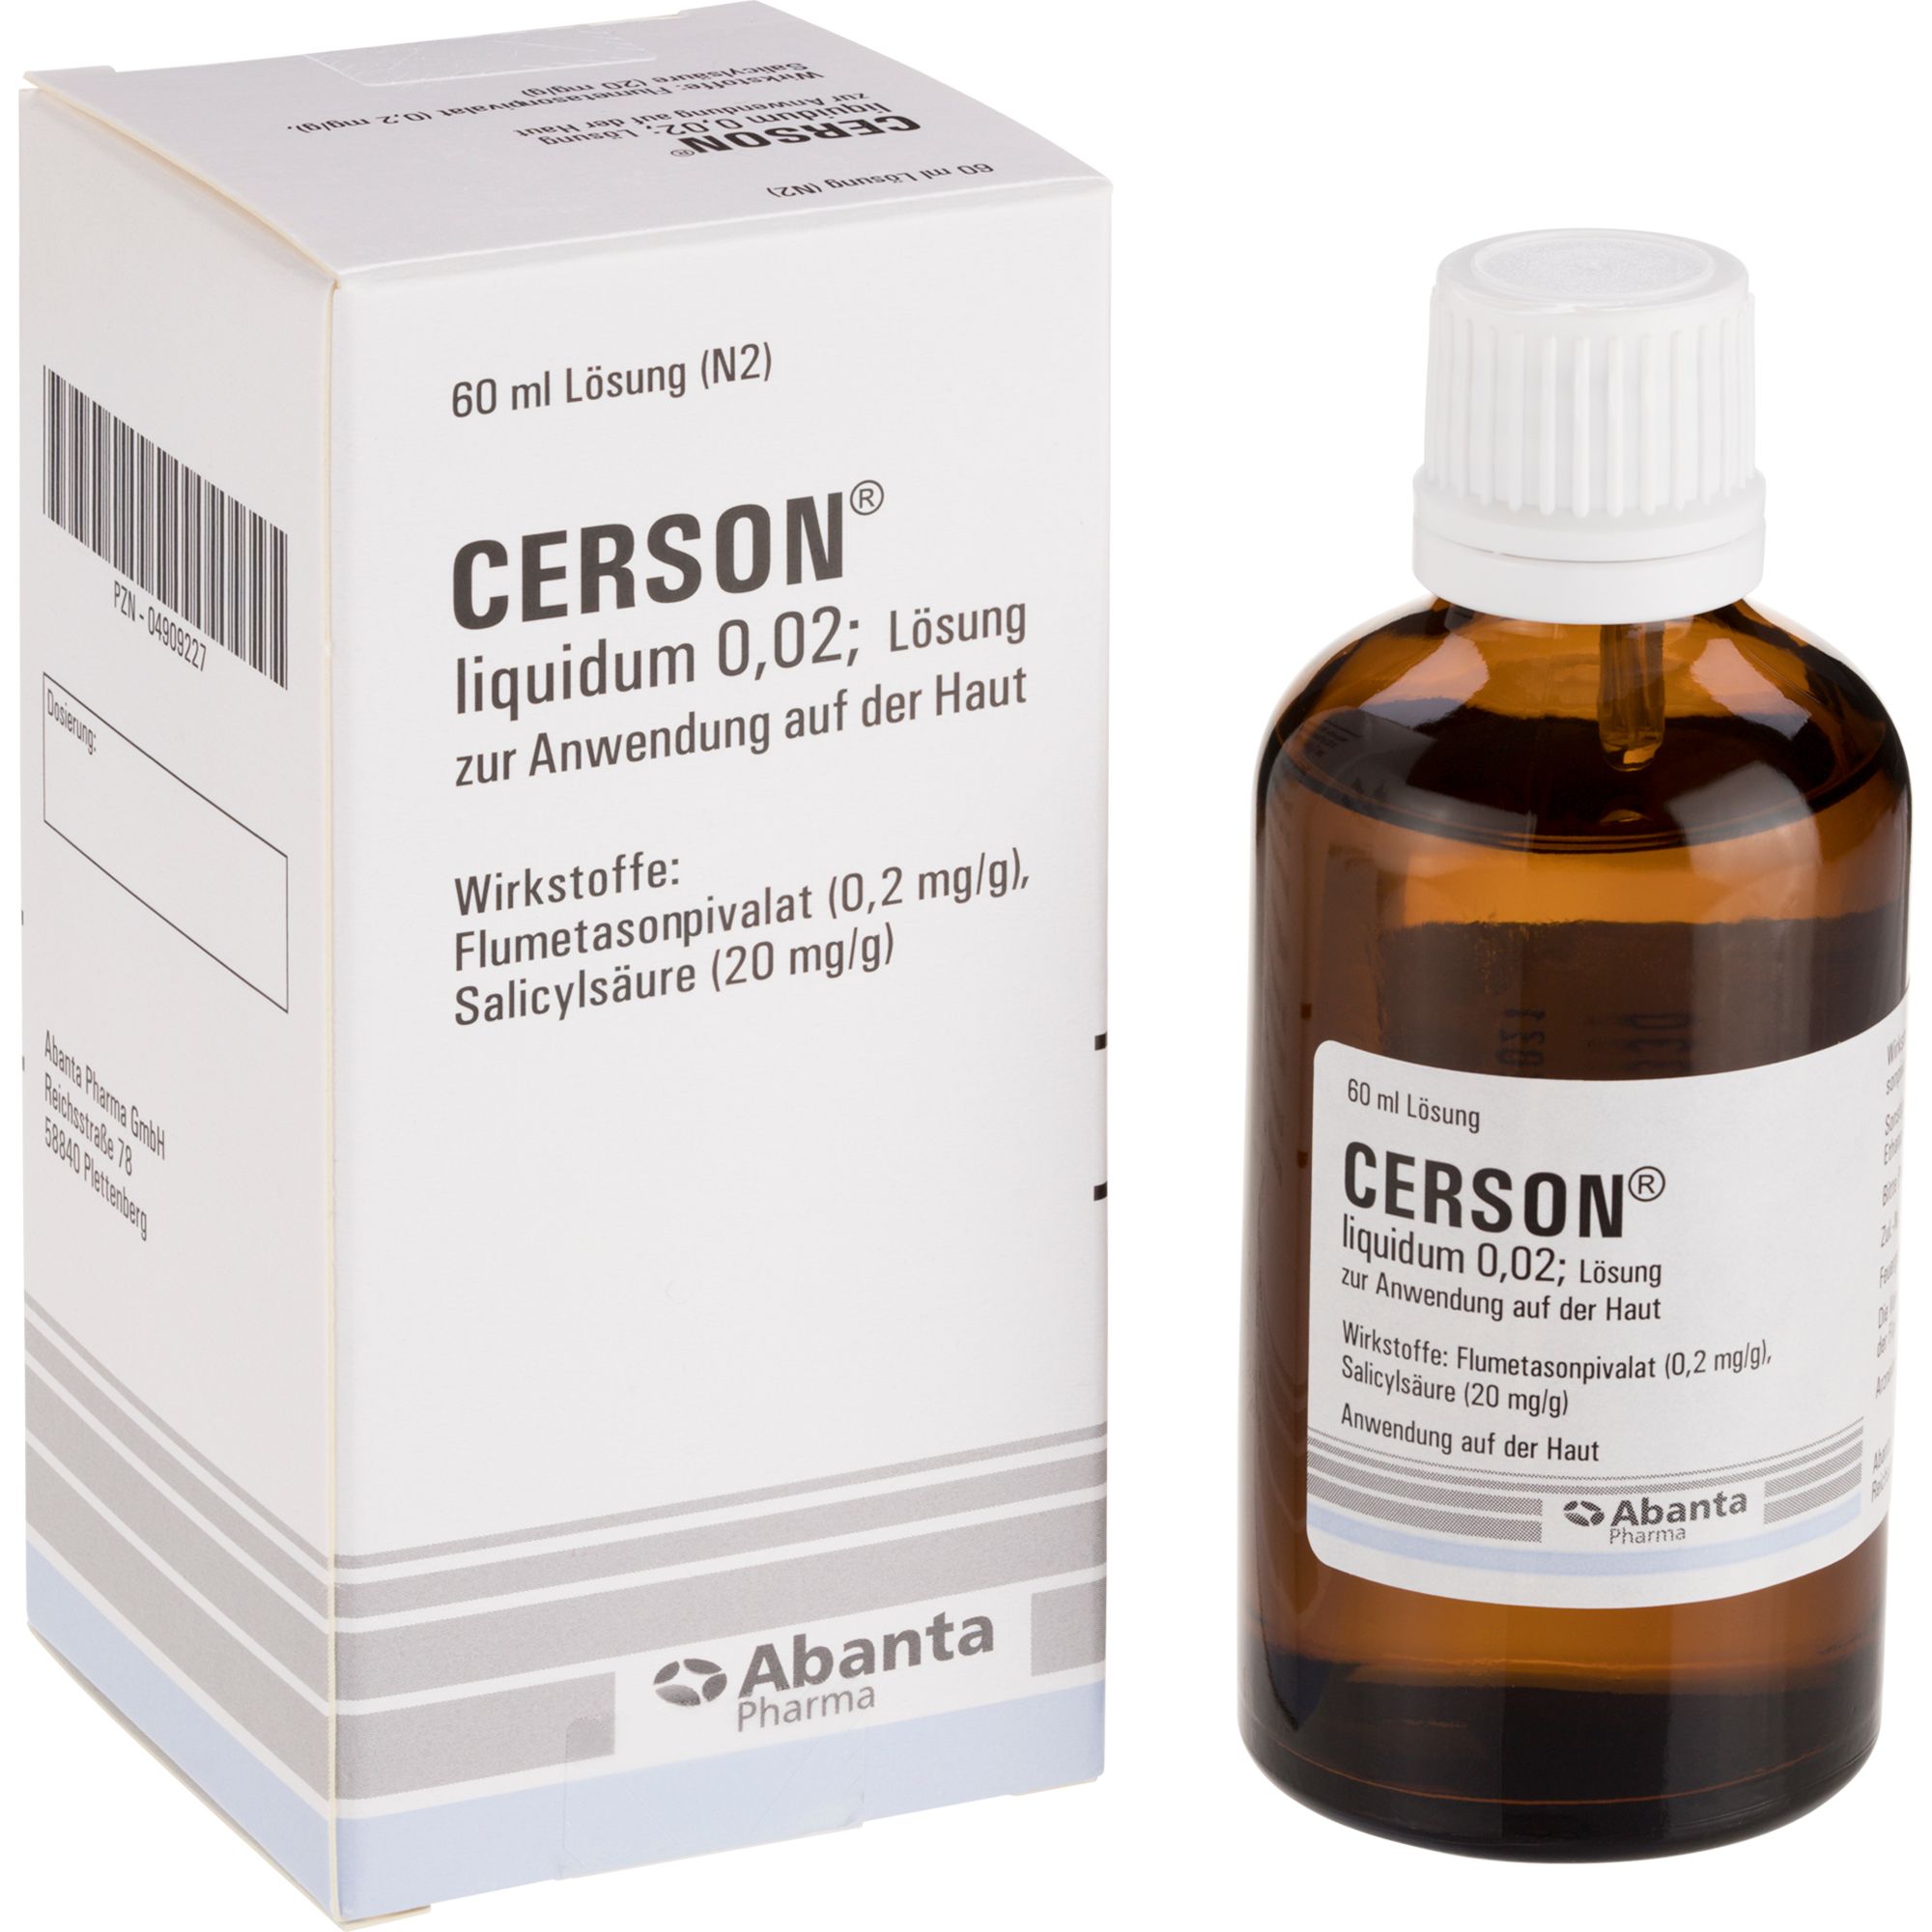 CERSON® liquidum 0,02